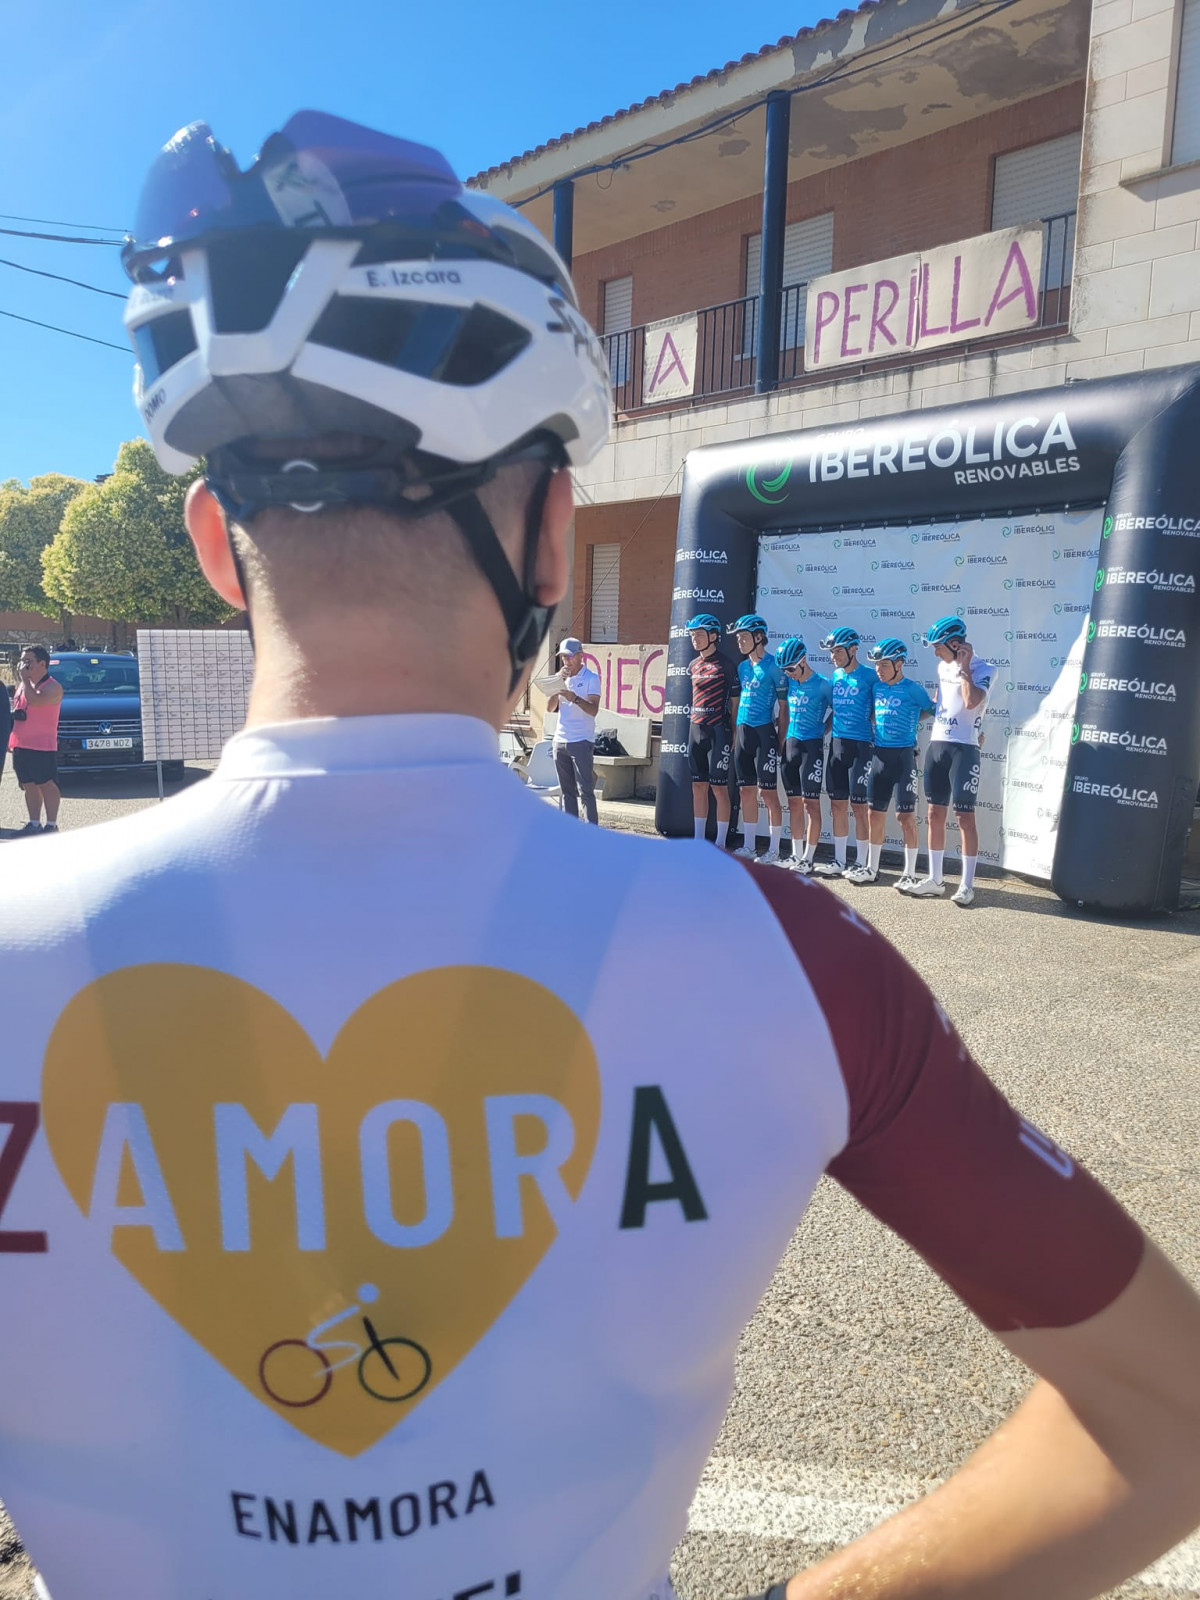 Zamora Enamora en Perilla de Castro   Vuelta a Zamora Etapa 3